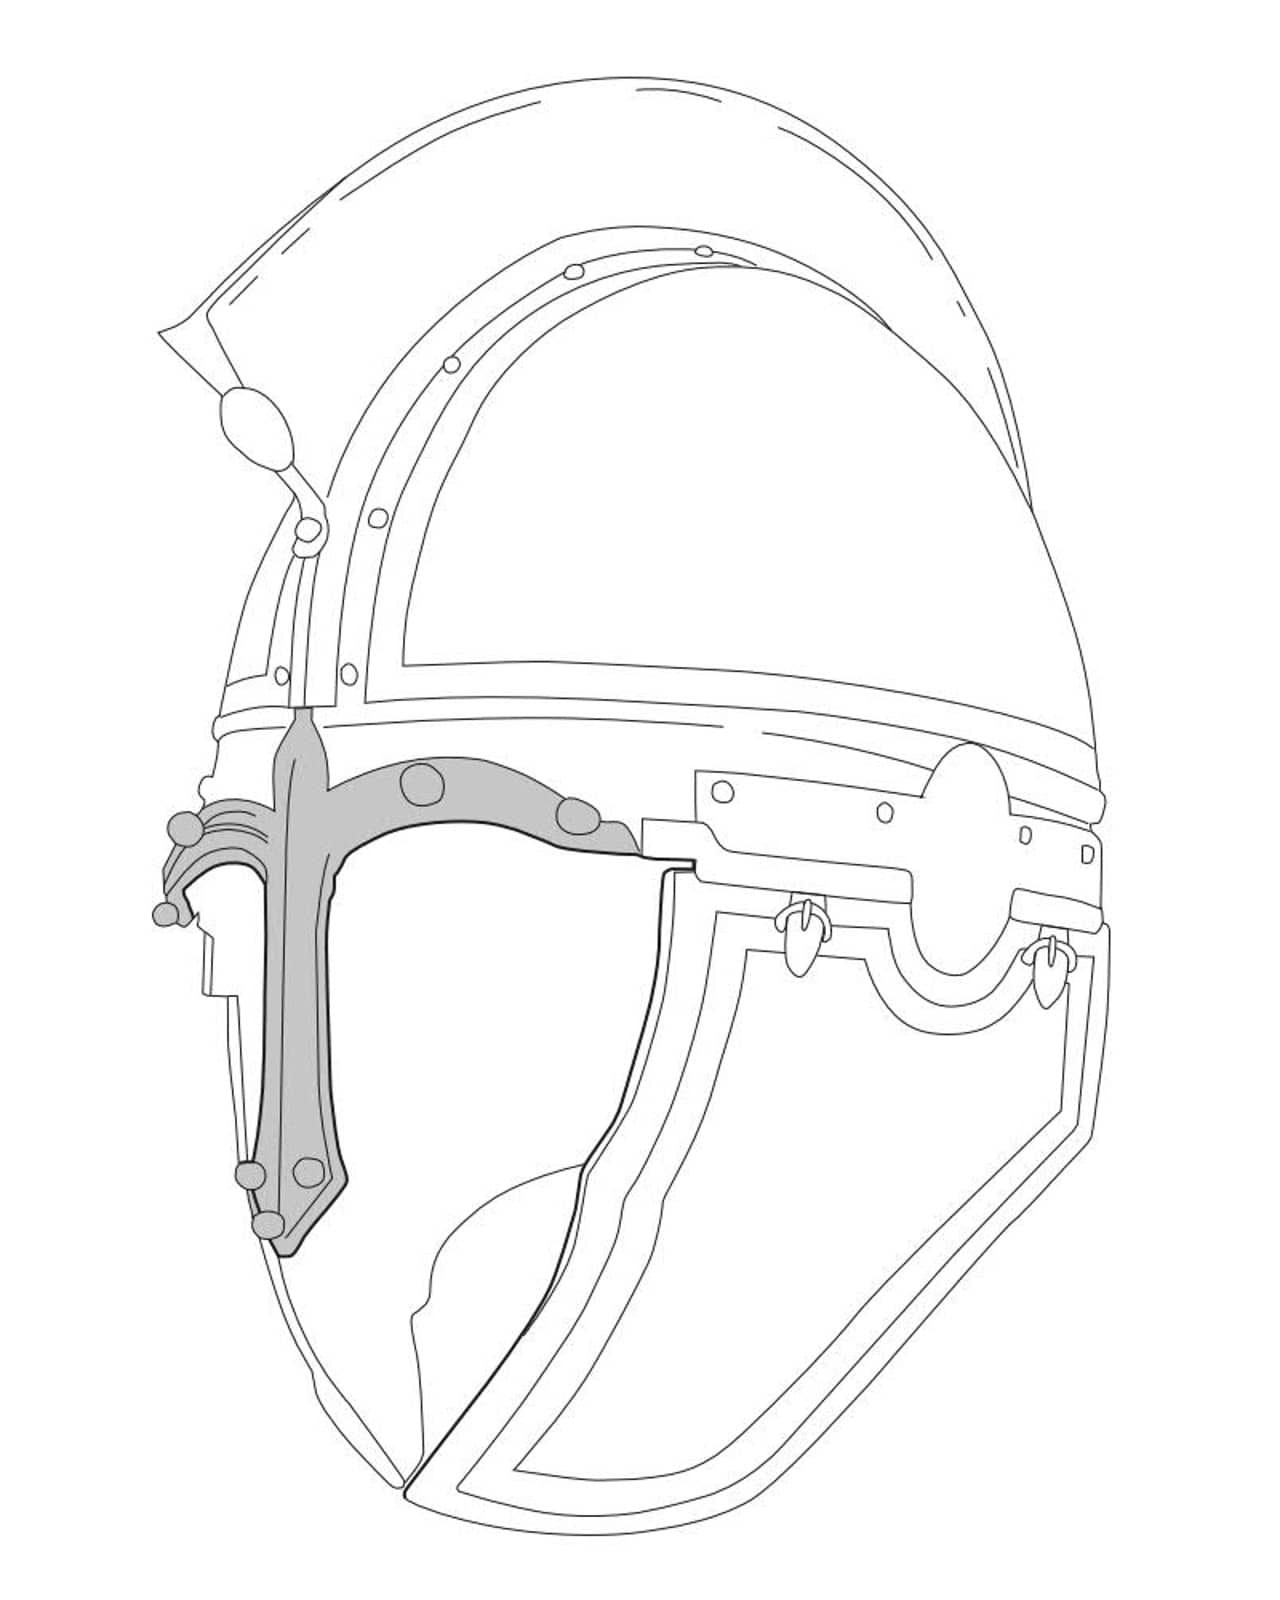 Zeichnung eines römischen Helms mit Nasenschutz.